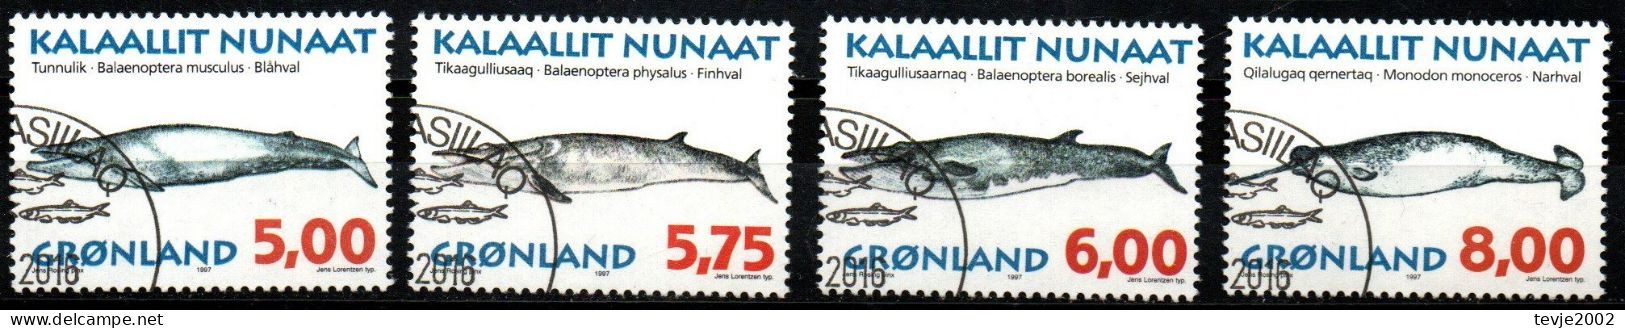 Grönland 1997 - Mi.Nr. 305 - 308 Y - Gestempelt Used - Tiere Animals Wale Whales - Usados